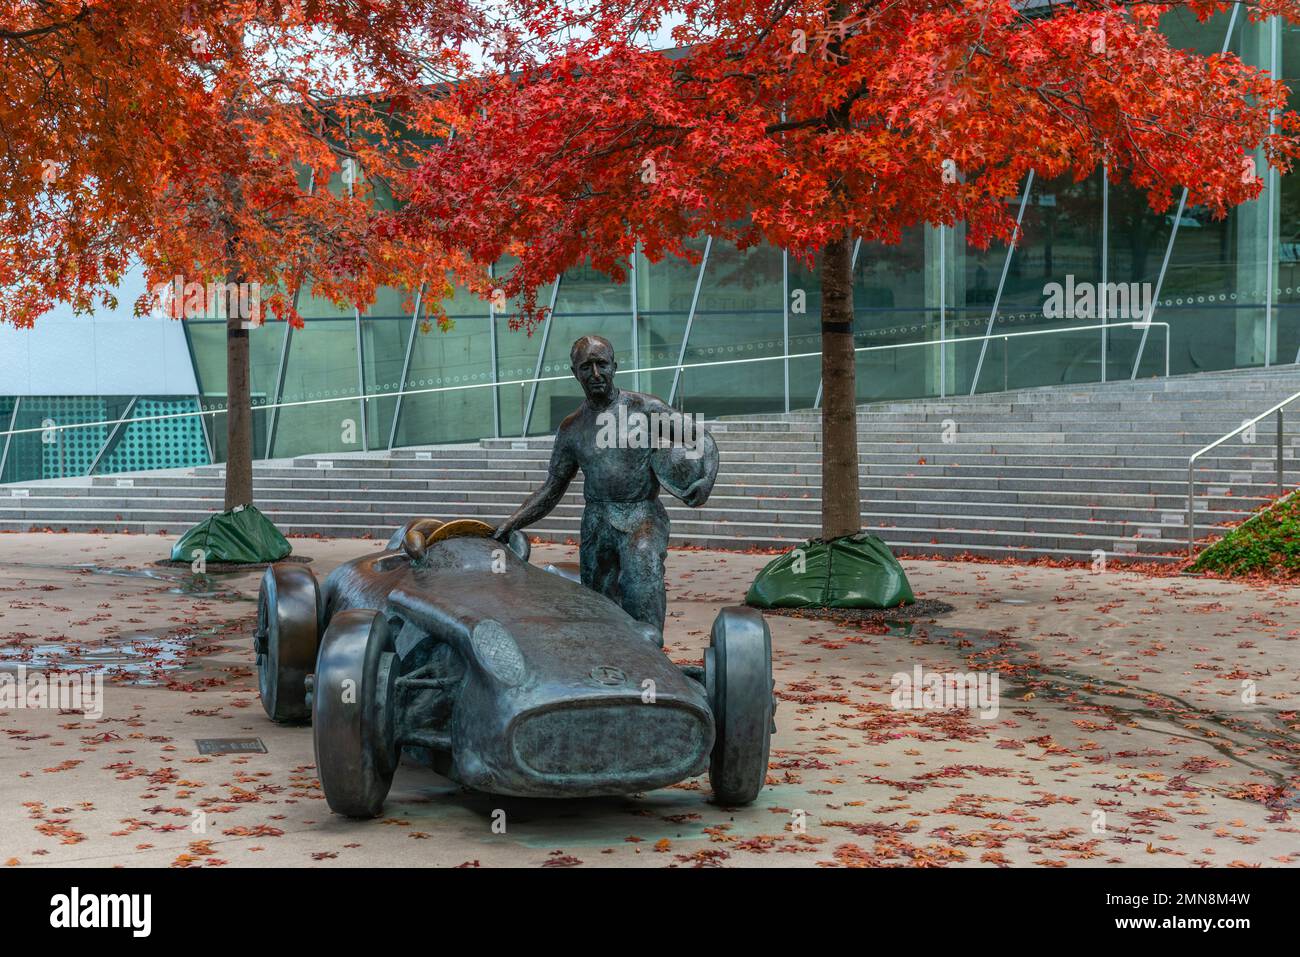 Sculpture of Juan Manuel Fangio, Five times world champion with 'Silberpfeil',  Mercedes-Benz Werk Untertürkheim, Benzviertel, Stuttgart,  Germany Stock Photo